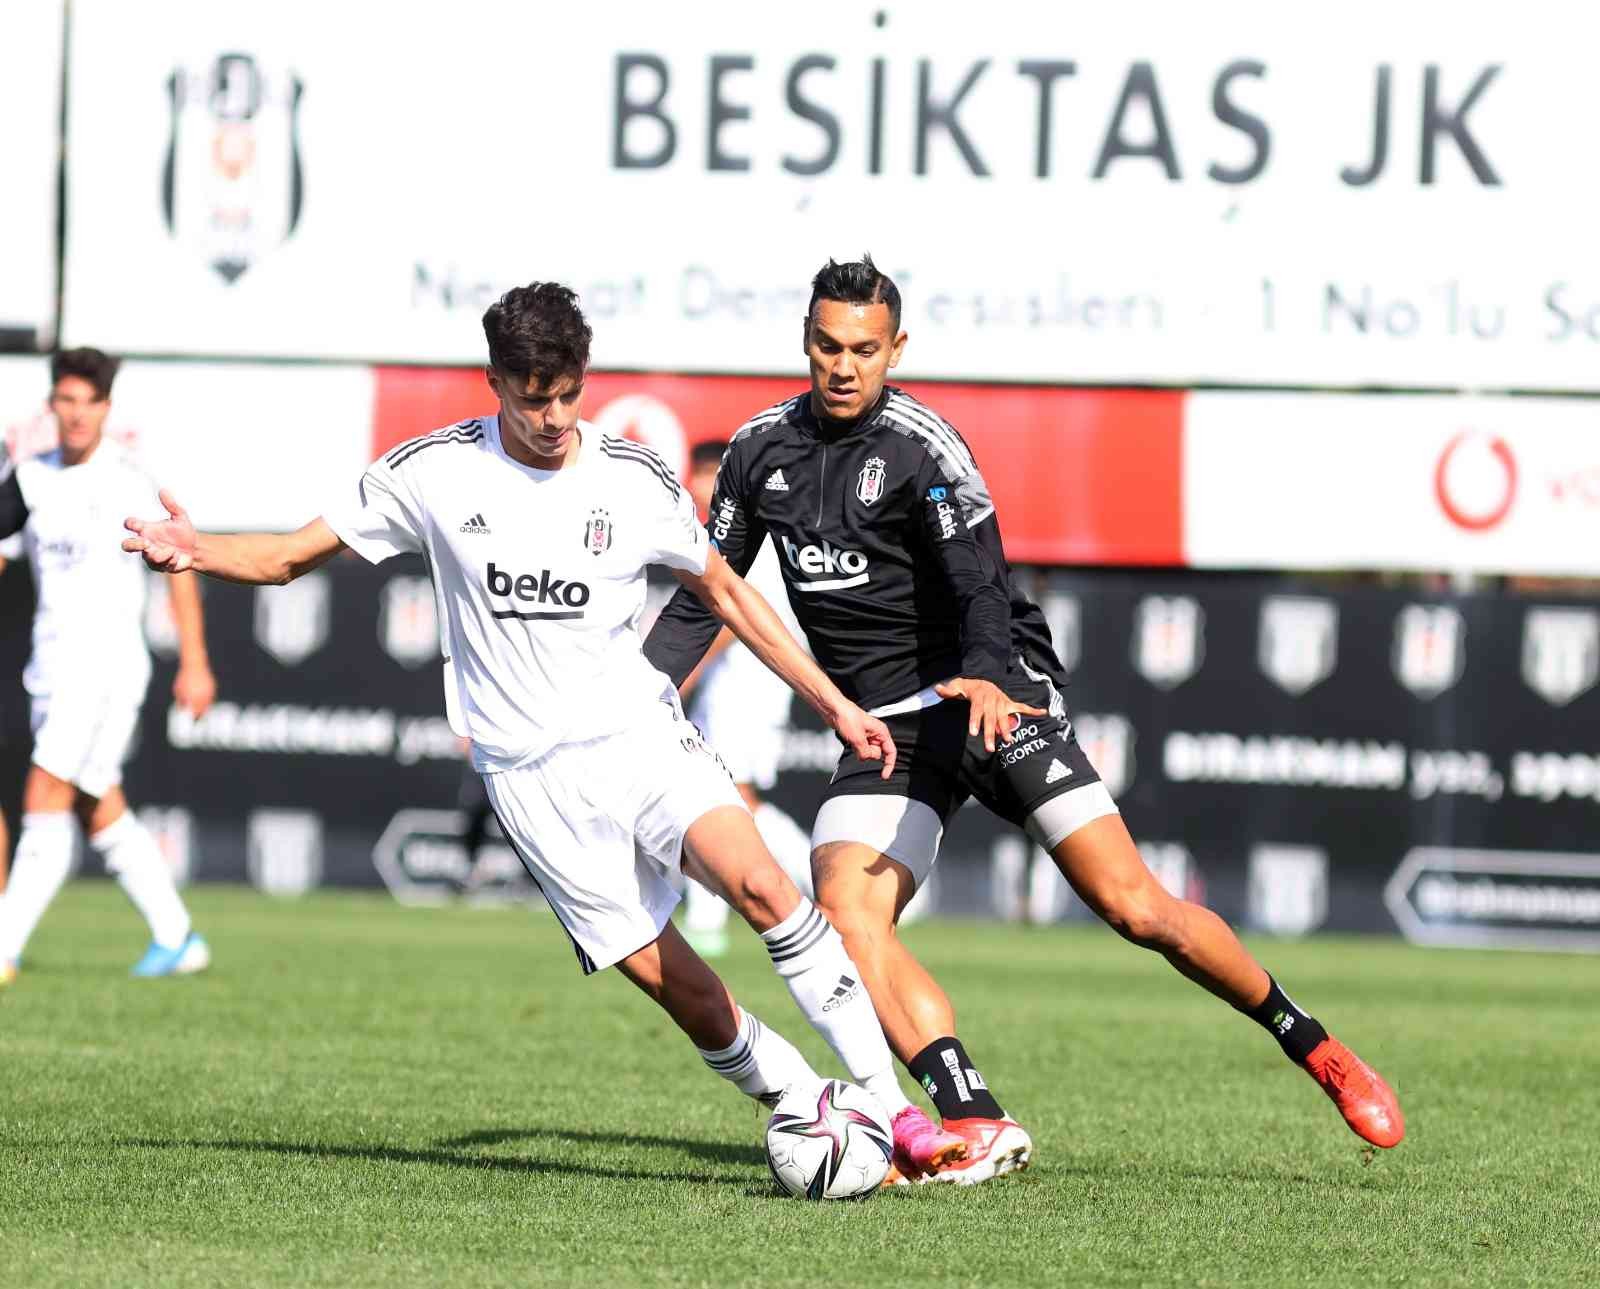 Beşiktaş, U-19 Akademi Takımı ile antrenman maçı yaptı #istanbul